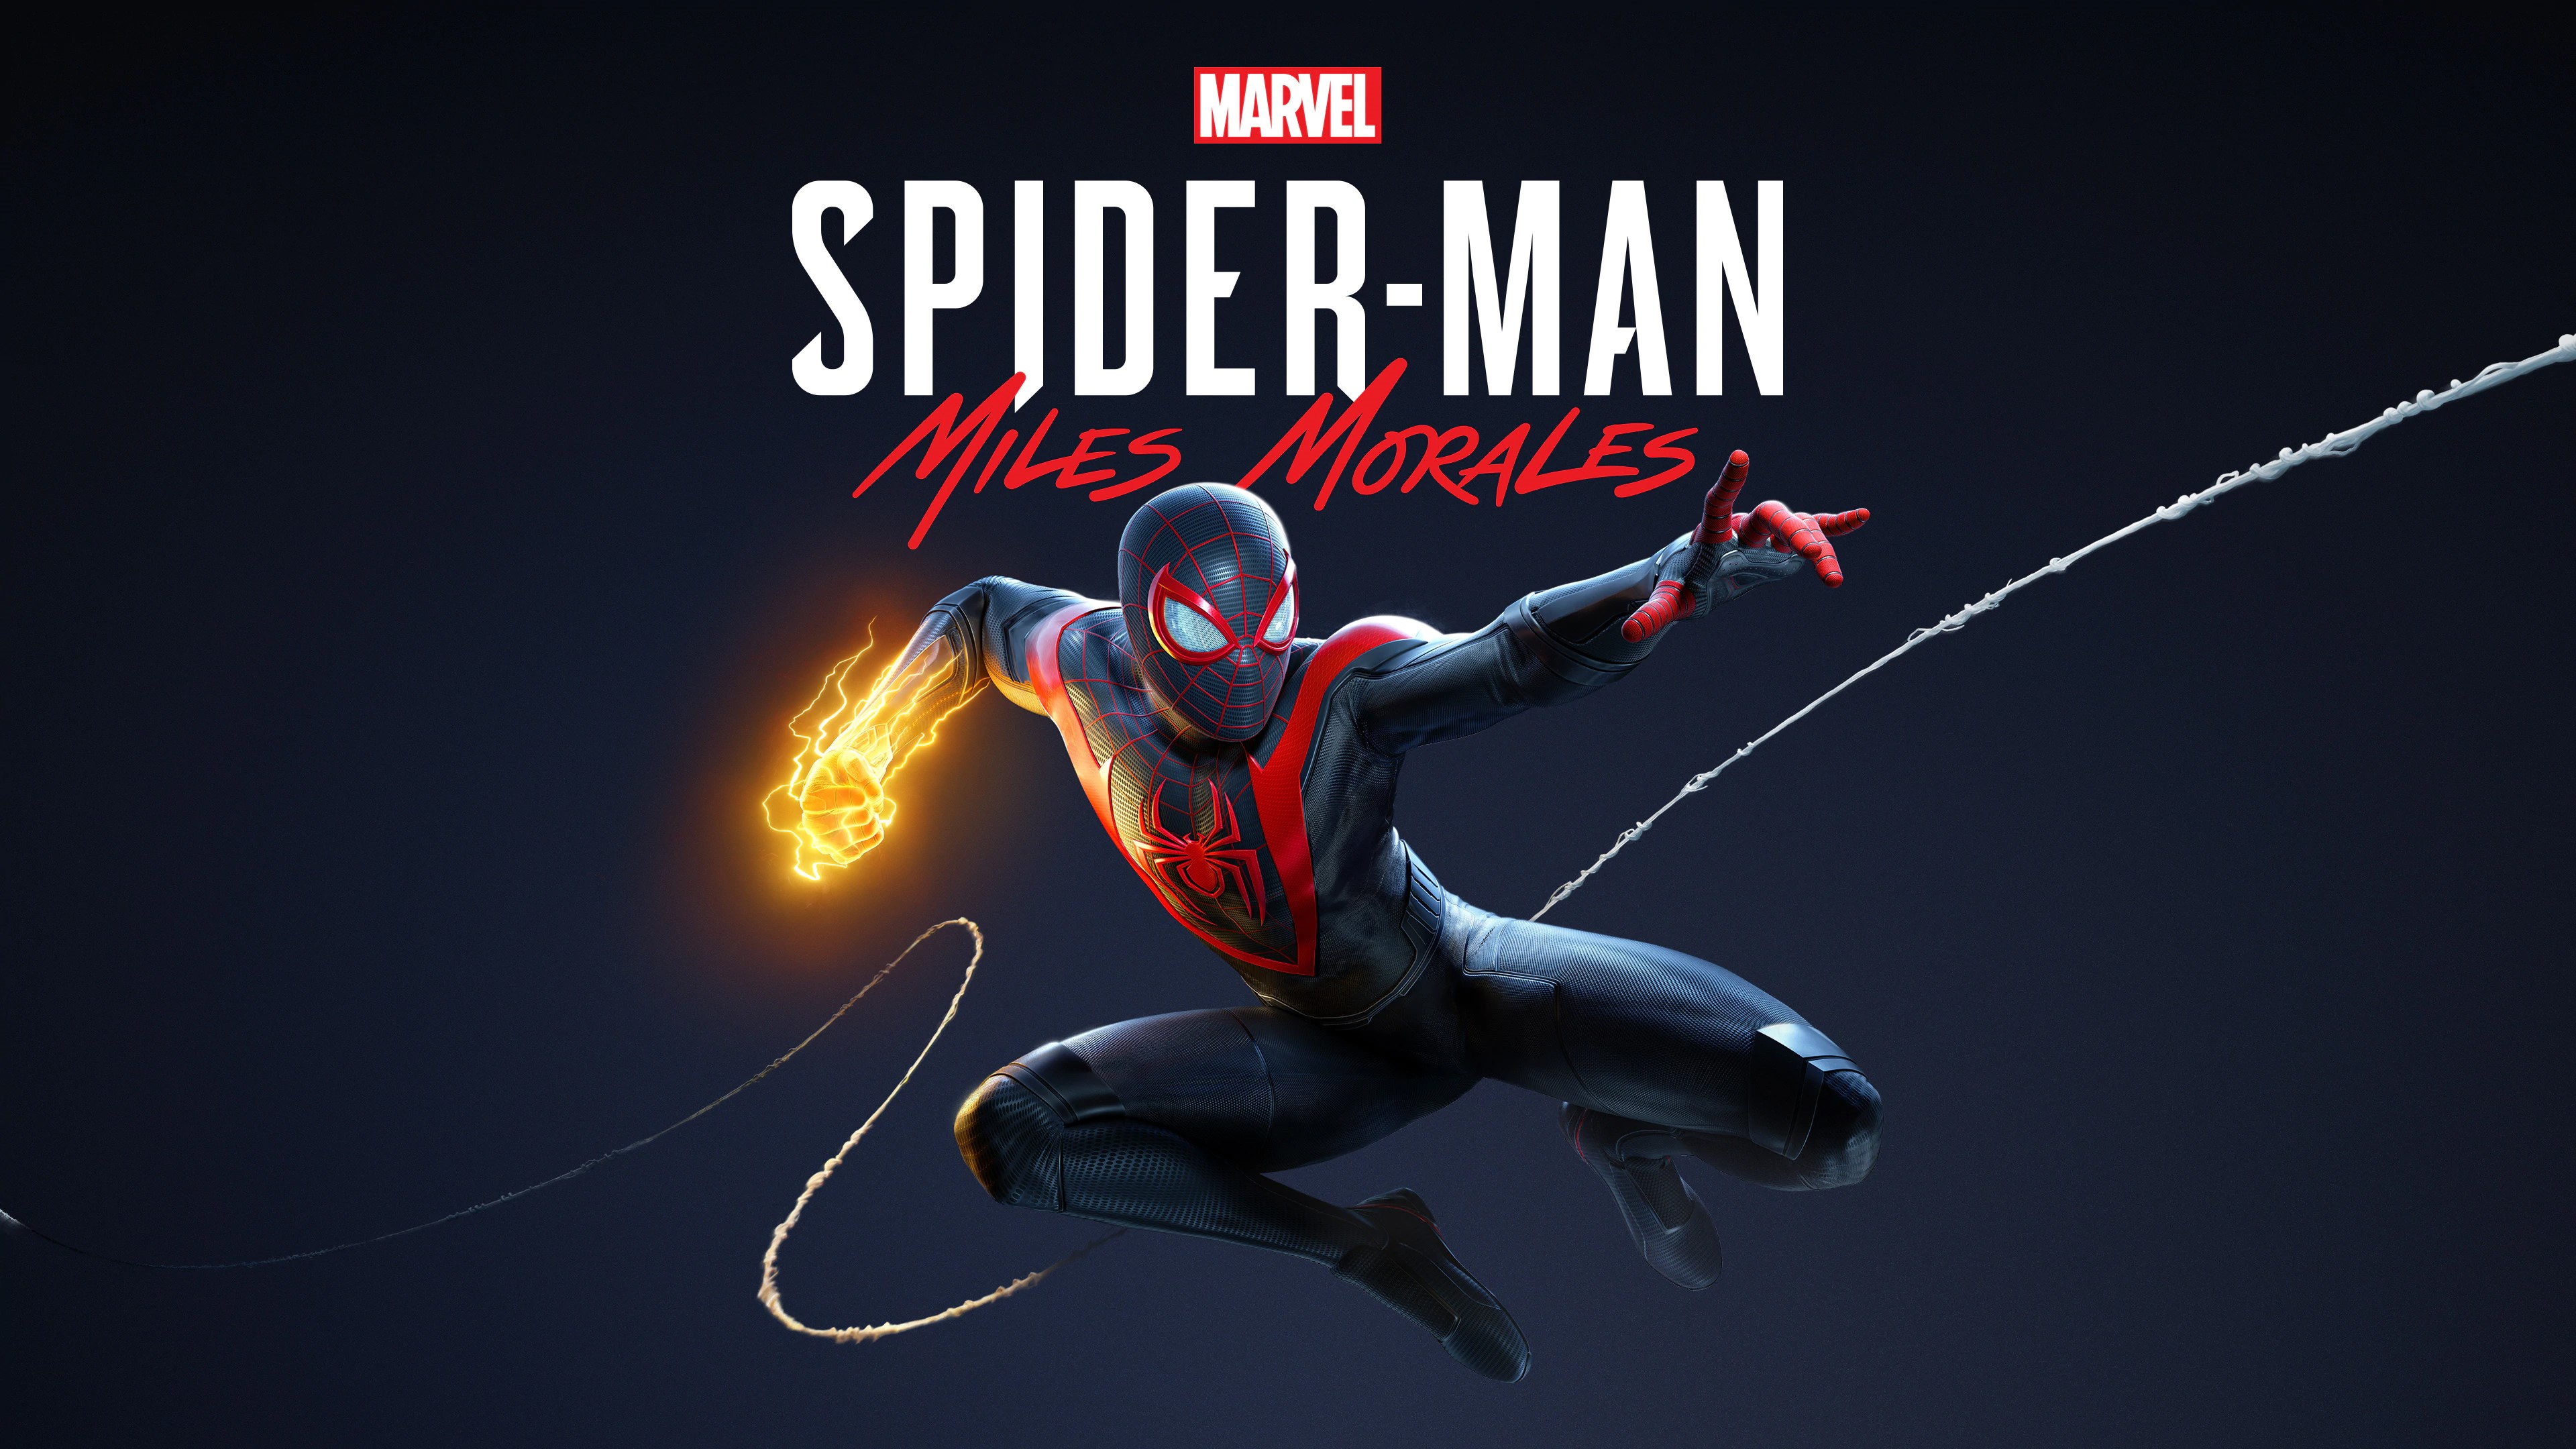 Marvel's Человек-паук /// Spider-Man: Miles Morales ( прохождение 22 )